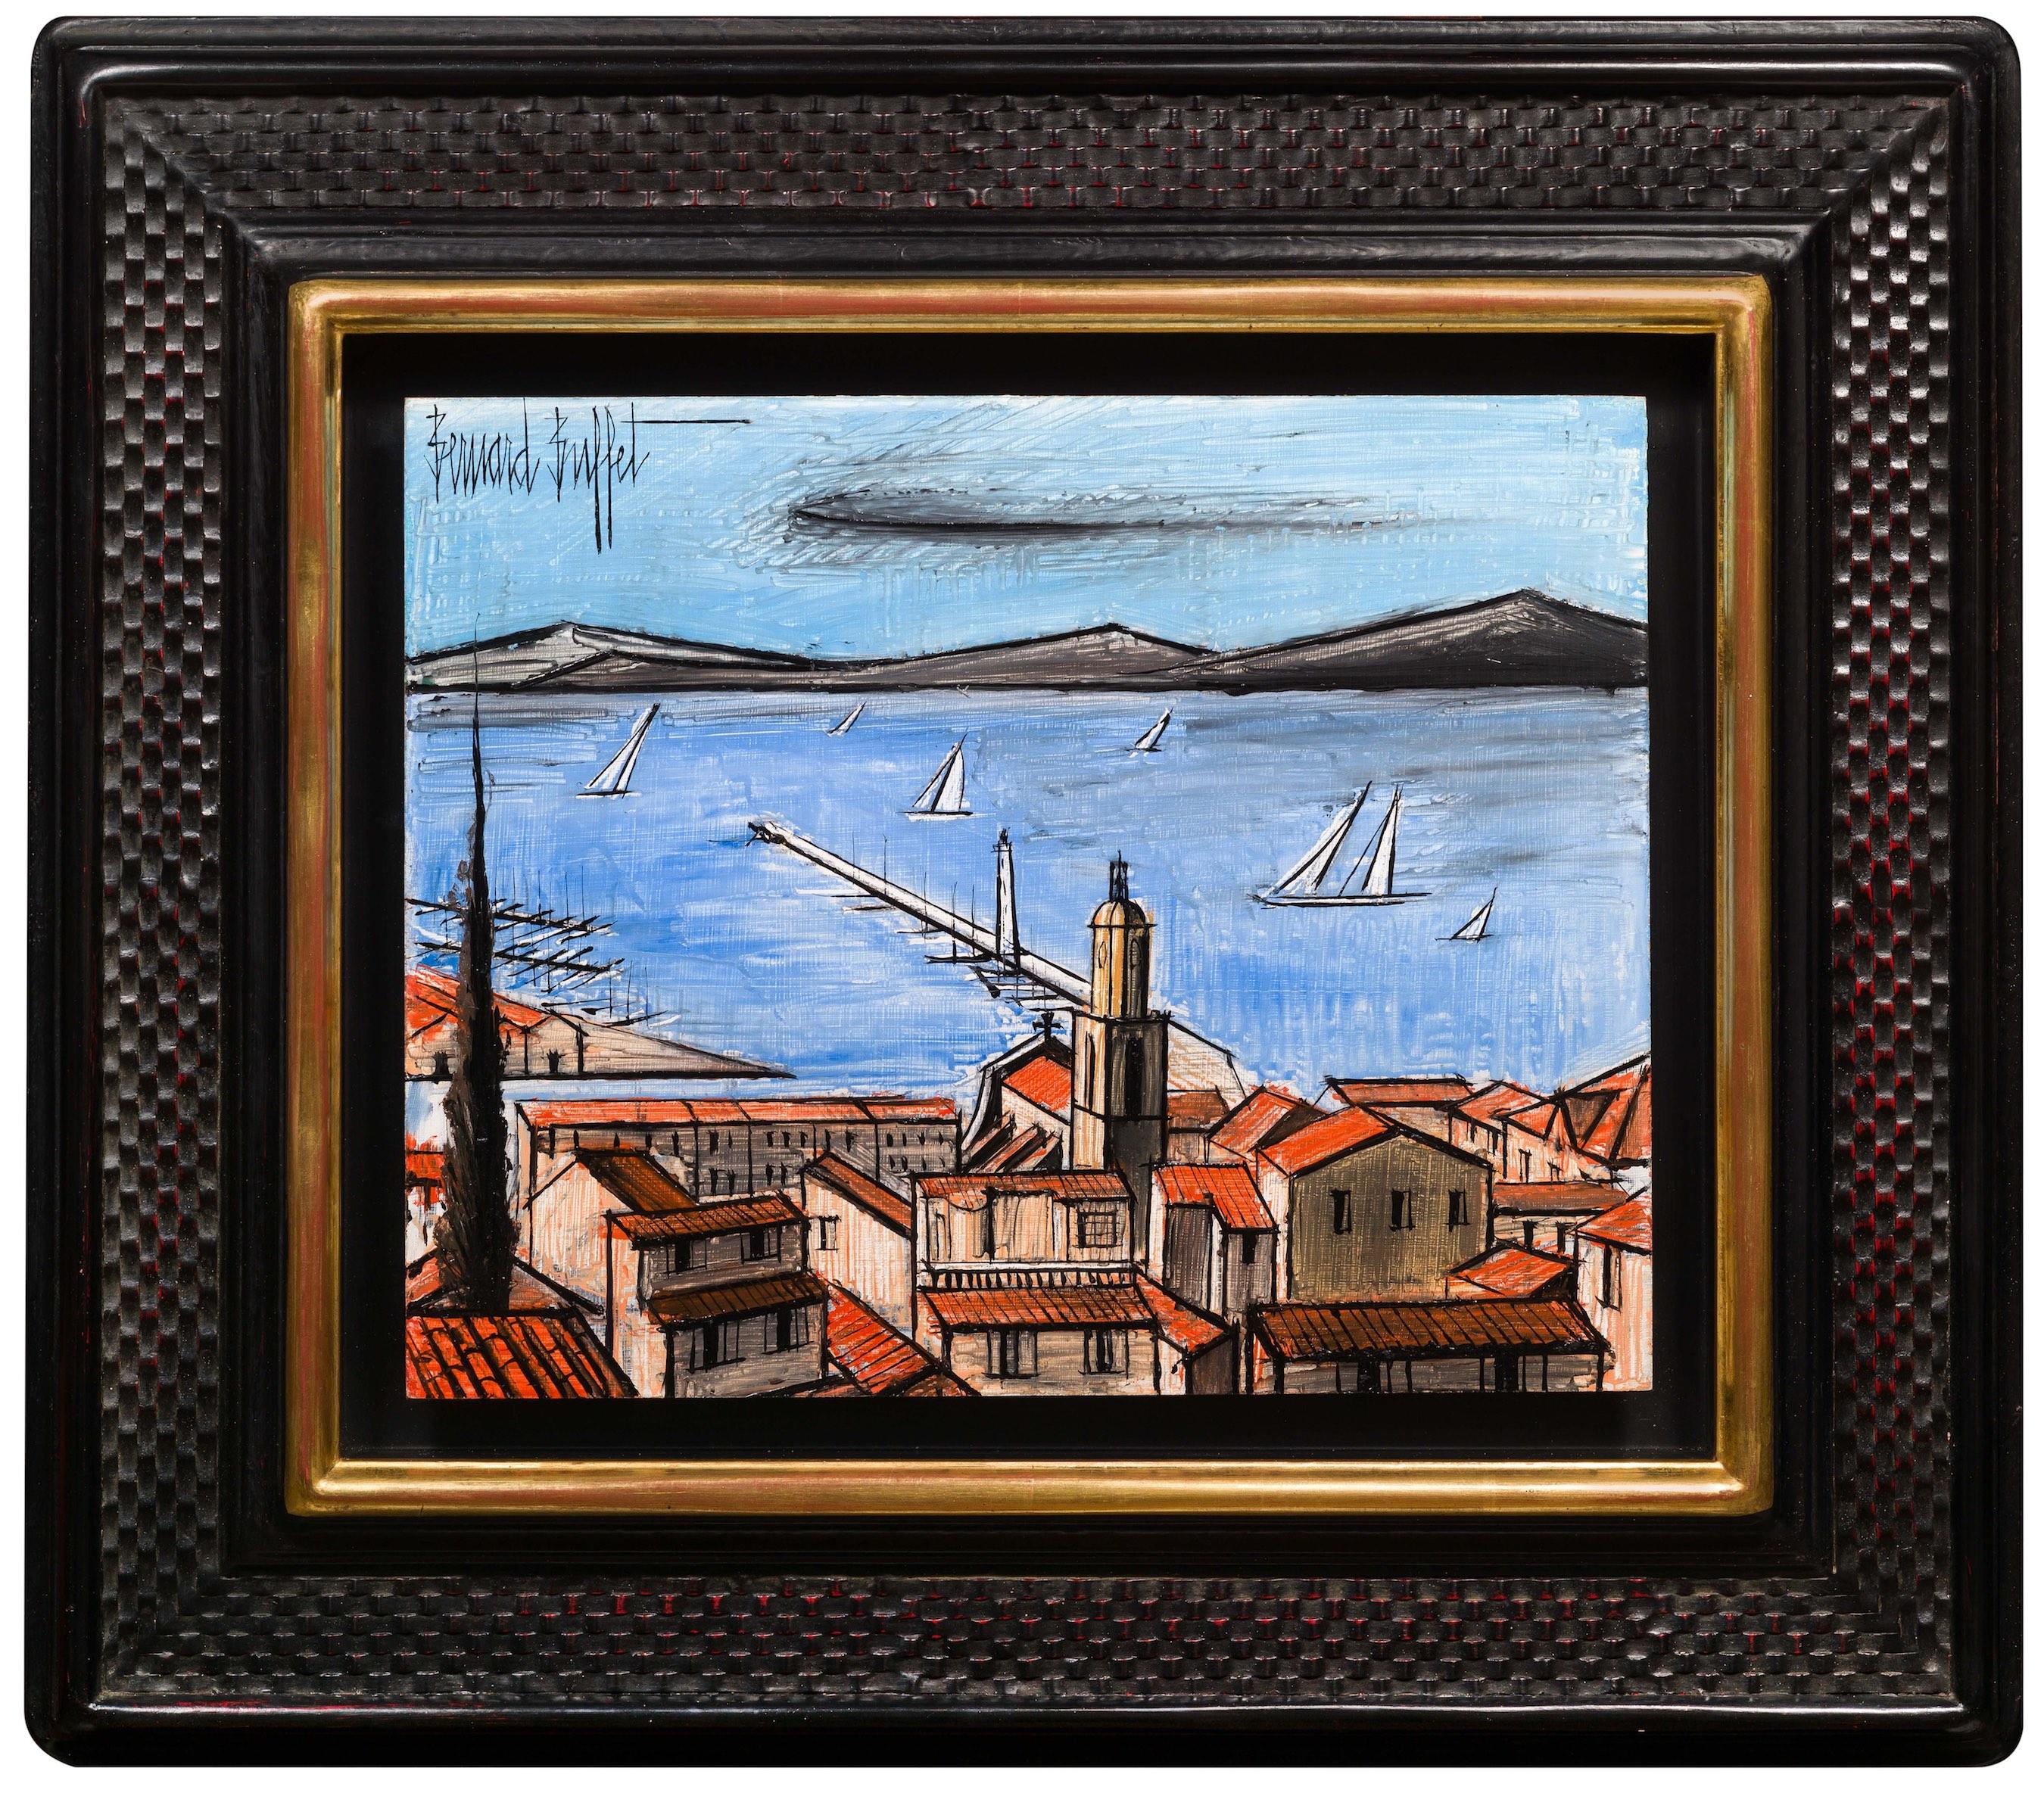 Saint-Tropez - Painting by Bernard Buffet